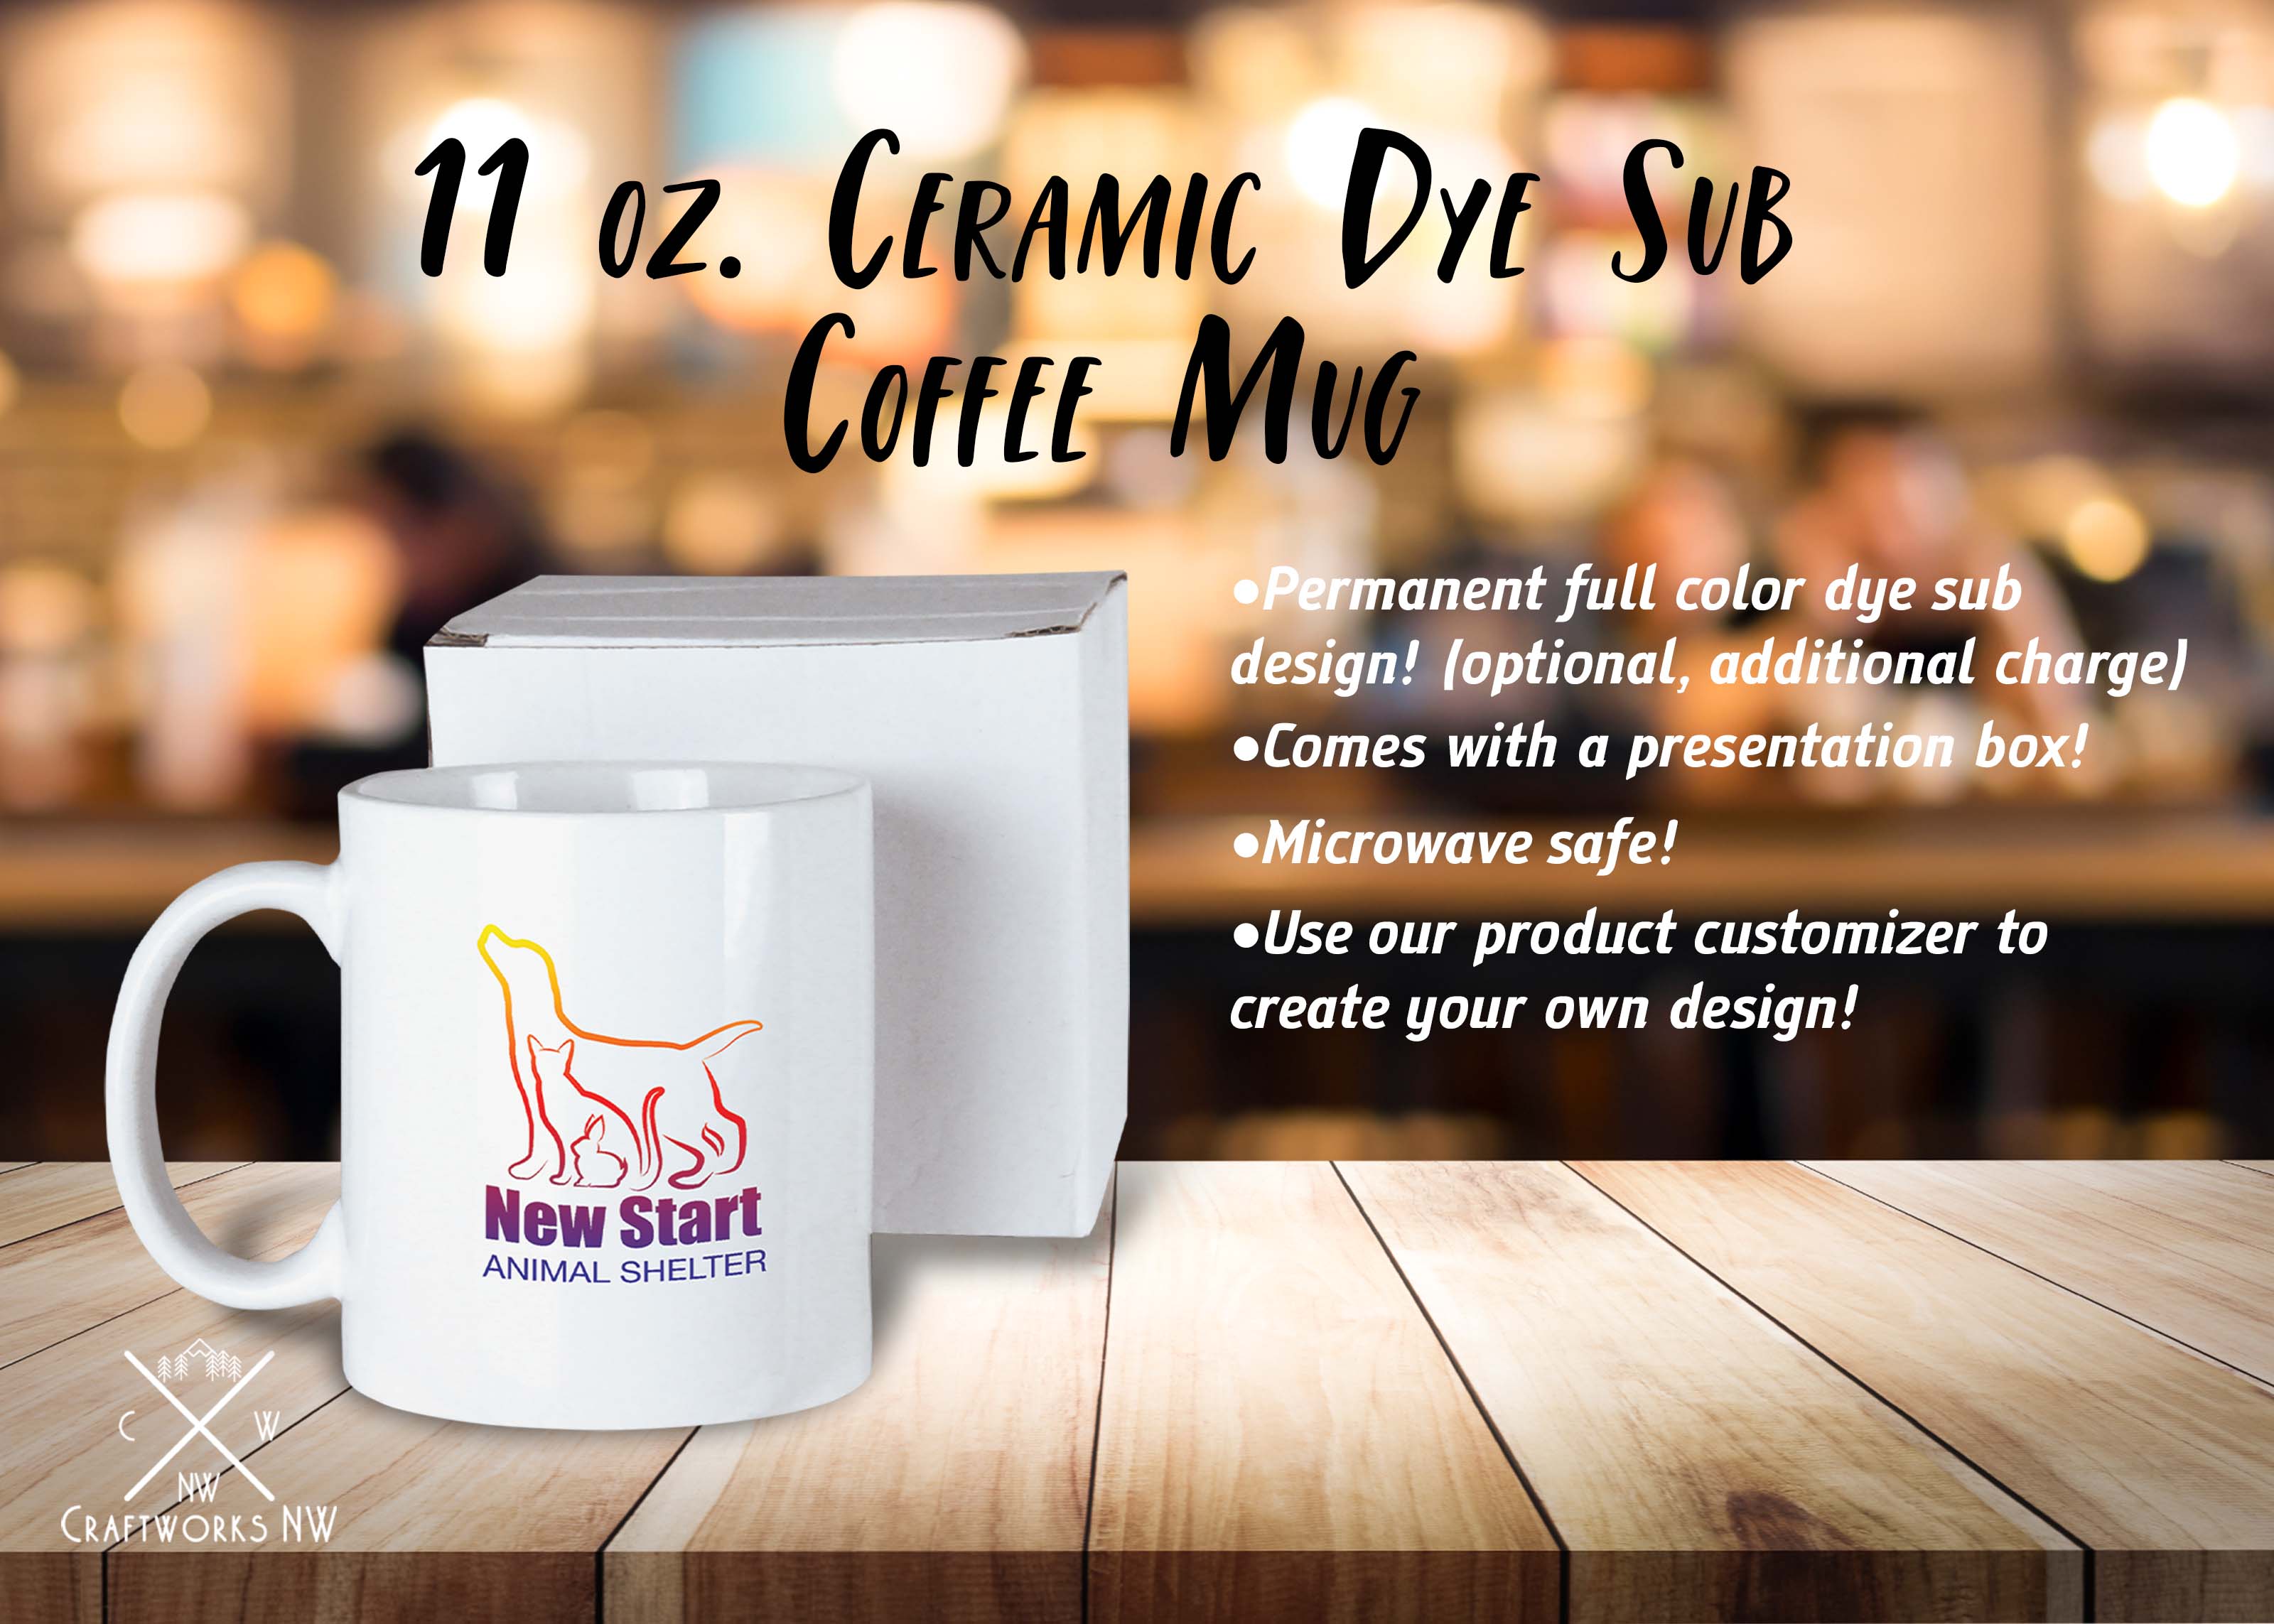 Ceramic Mug with White Box 11 oz. White Sublimatable, Full Color Sub Dye Ceramic Mug Craftworks NW 